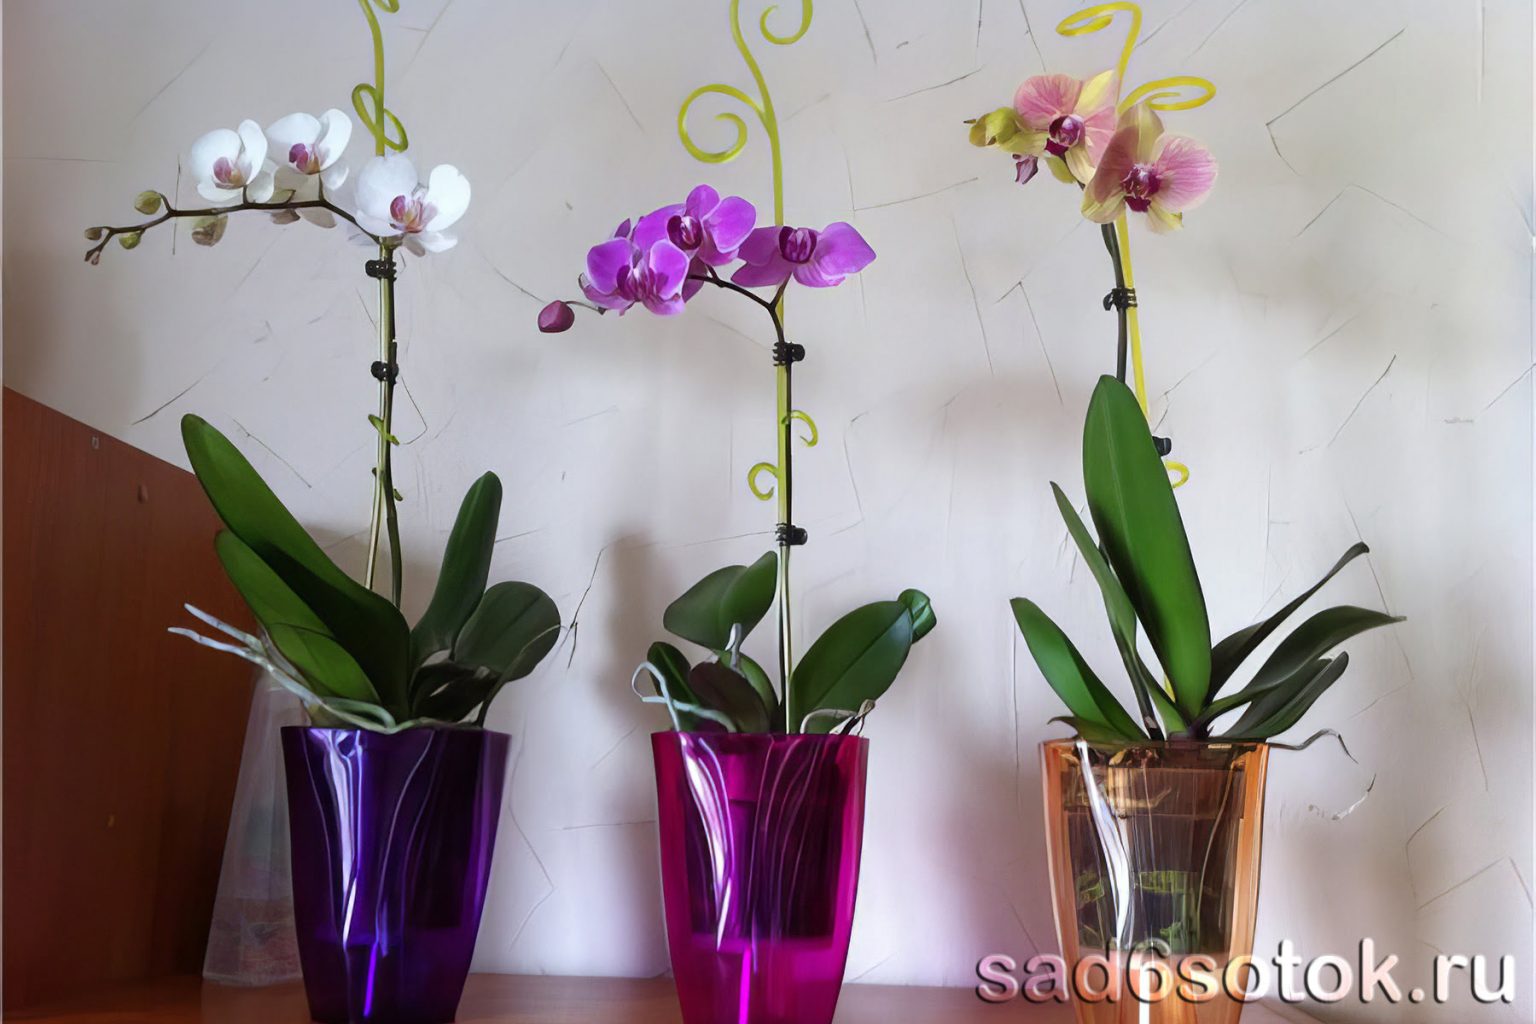 Размер горшка для орхидеи. Прозрачный горшок для Орхидея фаленопсис. Орхидея фаленопсис 1 горшок. Дендрофаленопсис Орхидея. Орхидея фаленопсис в горшке.